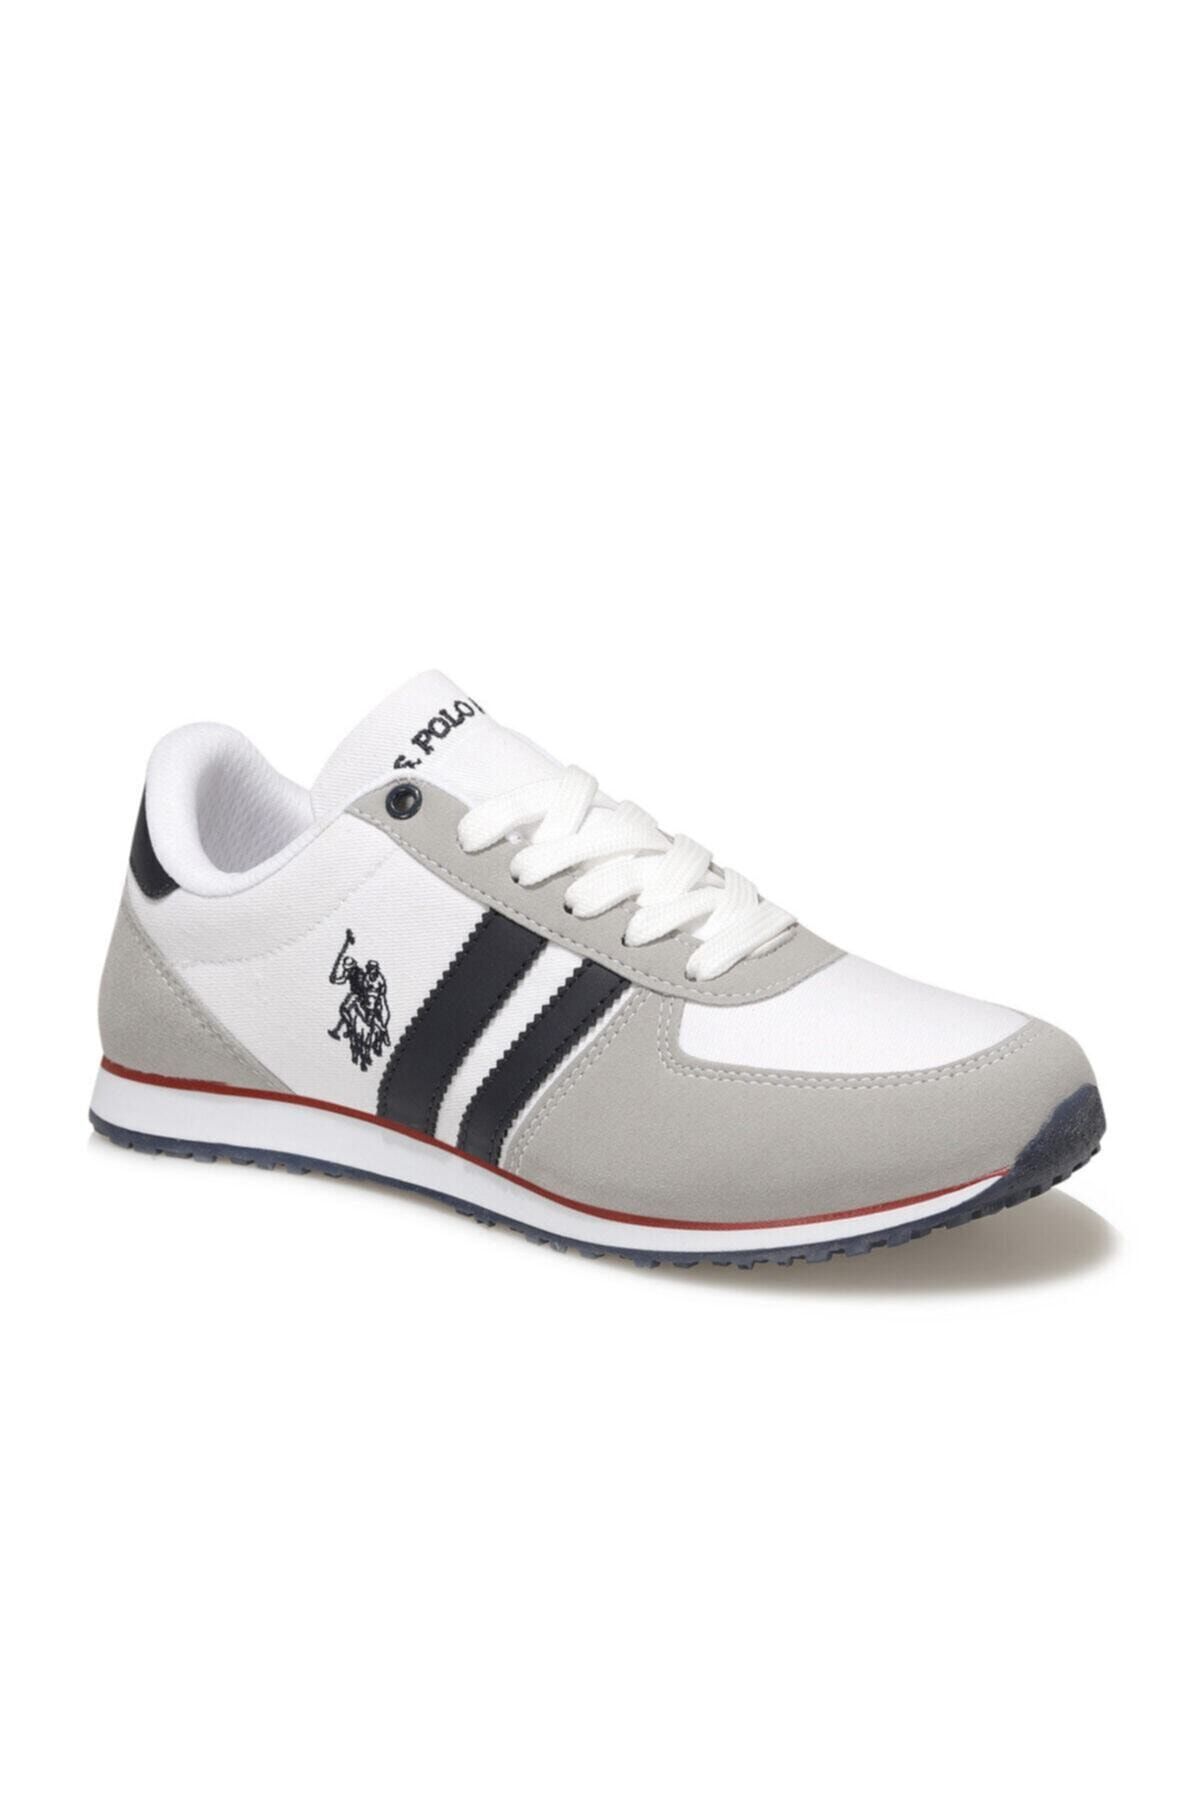 U.S. Polo Assn. PLUS 1FX Beyaz Erkek Sneaker Ayakkabı 100910648